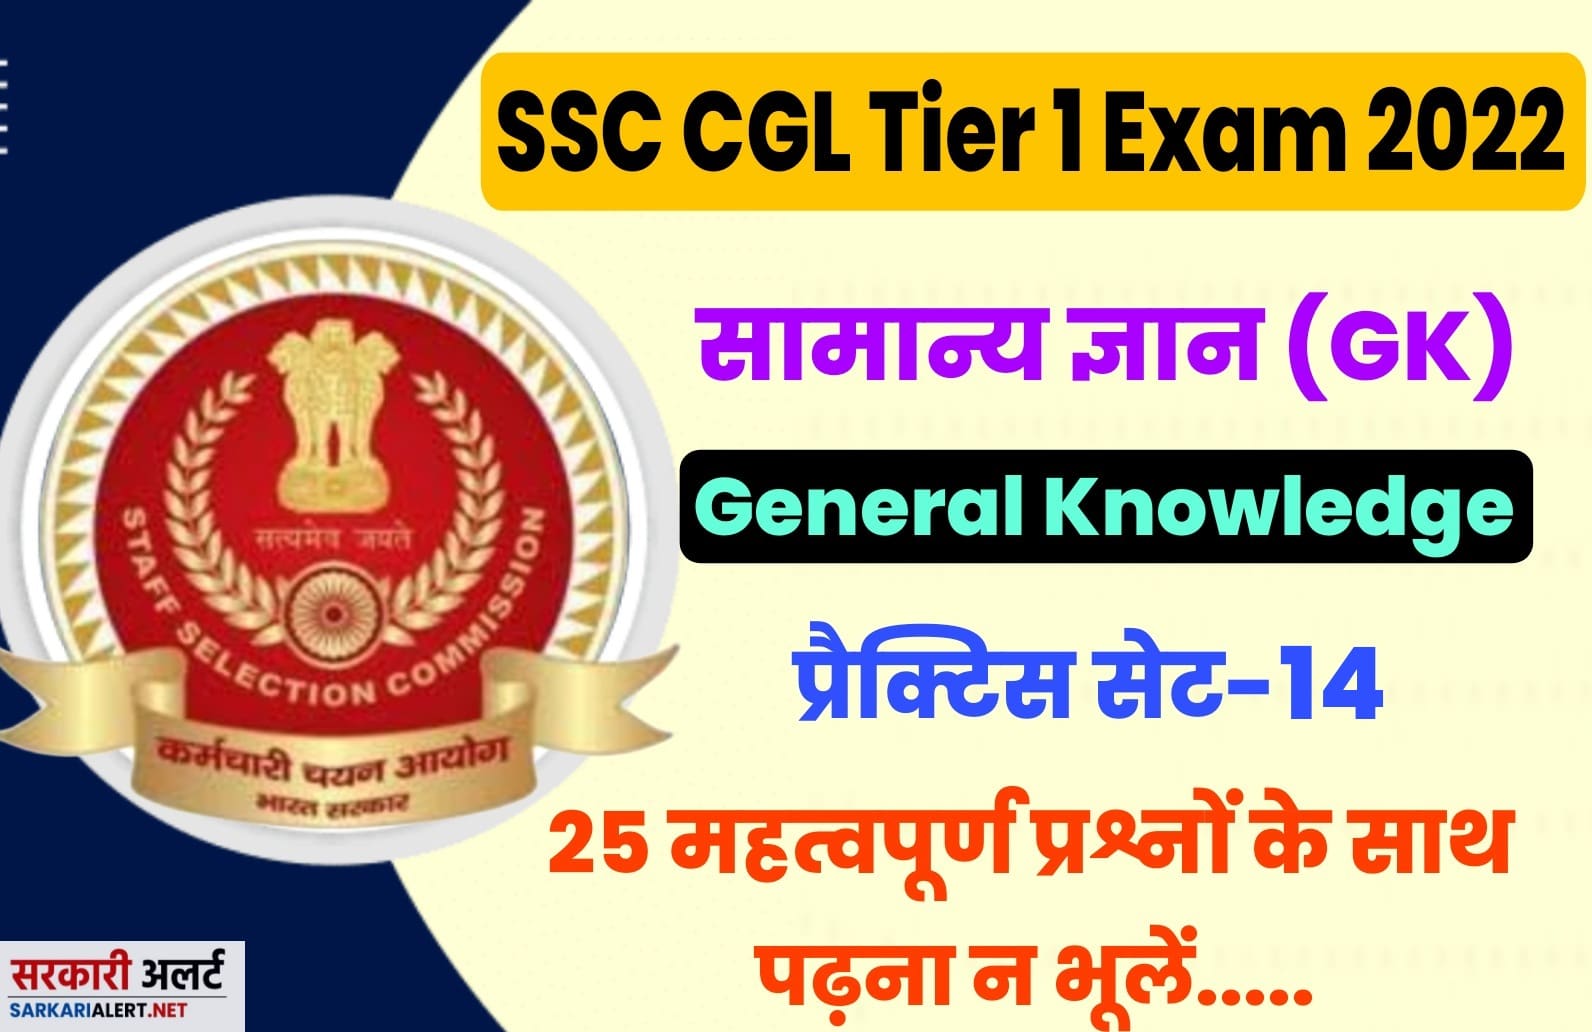 SSC CGL Tier I Exam 2022 GK Practice Set 14 | परीक्षा हॉल में जाने से पहले अतिमहत्वपूर्ण प्रश्नों का अध्ययन अवश्य करें